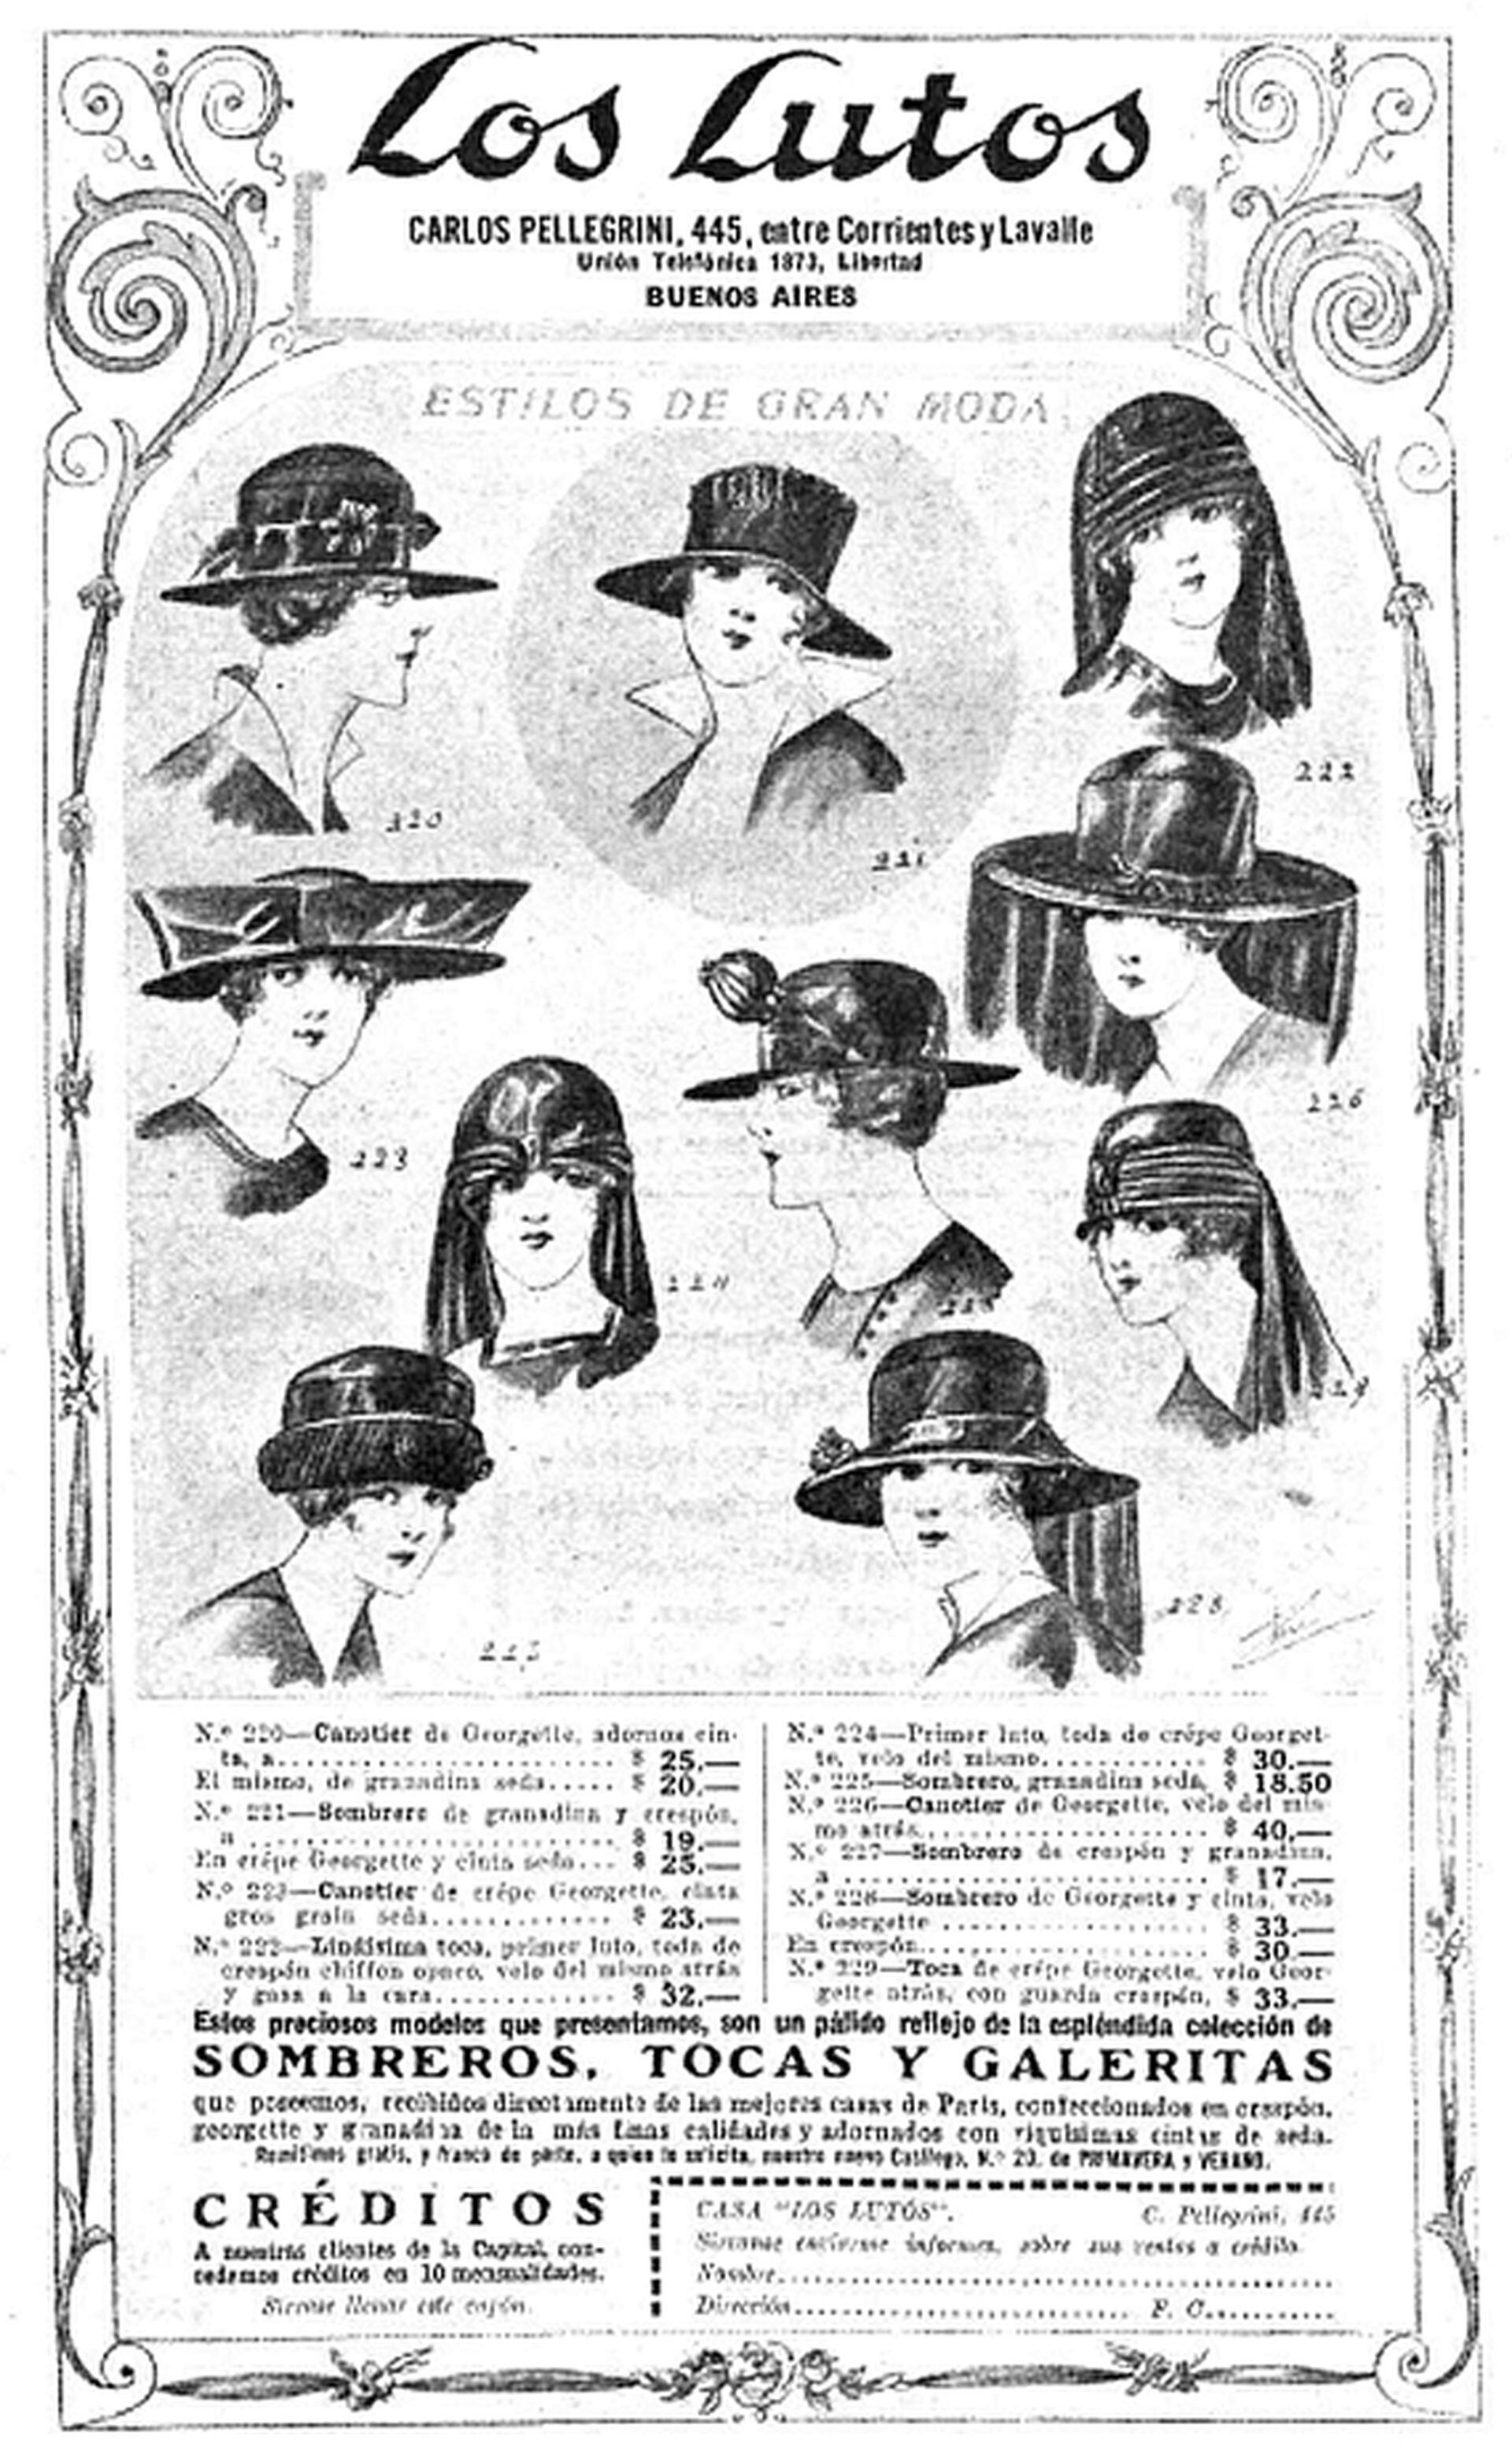 El local Los Lutos estaba ubicado en Carlos Pellegrini al 445, y vendía desde sombreros hasta tapados y vestidos importados de Francia